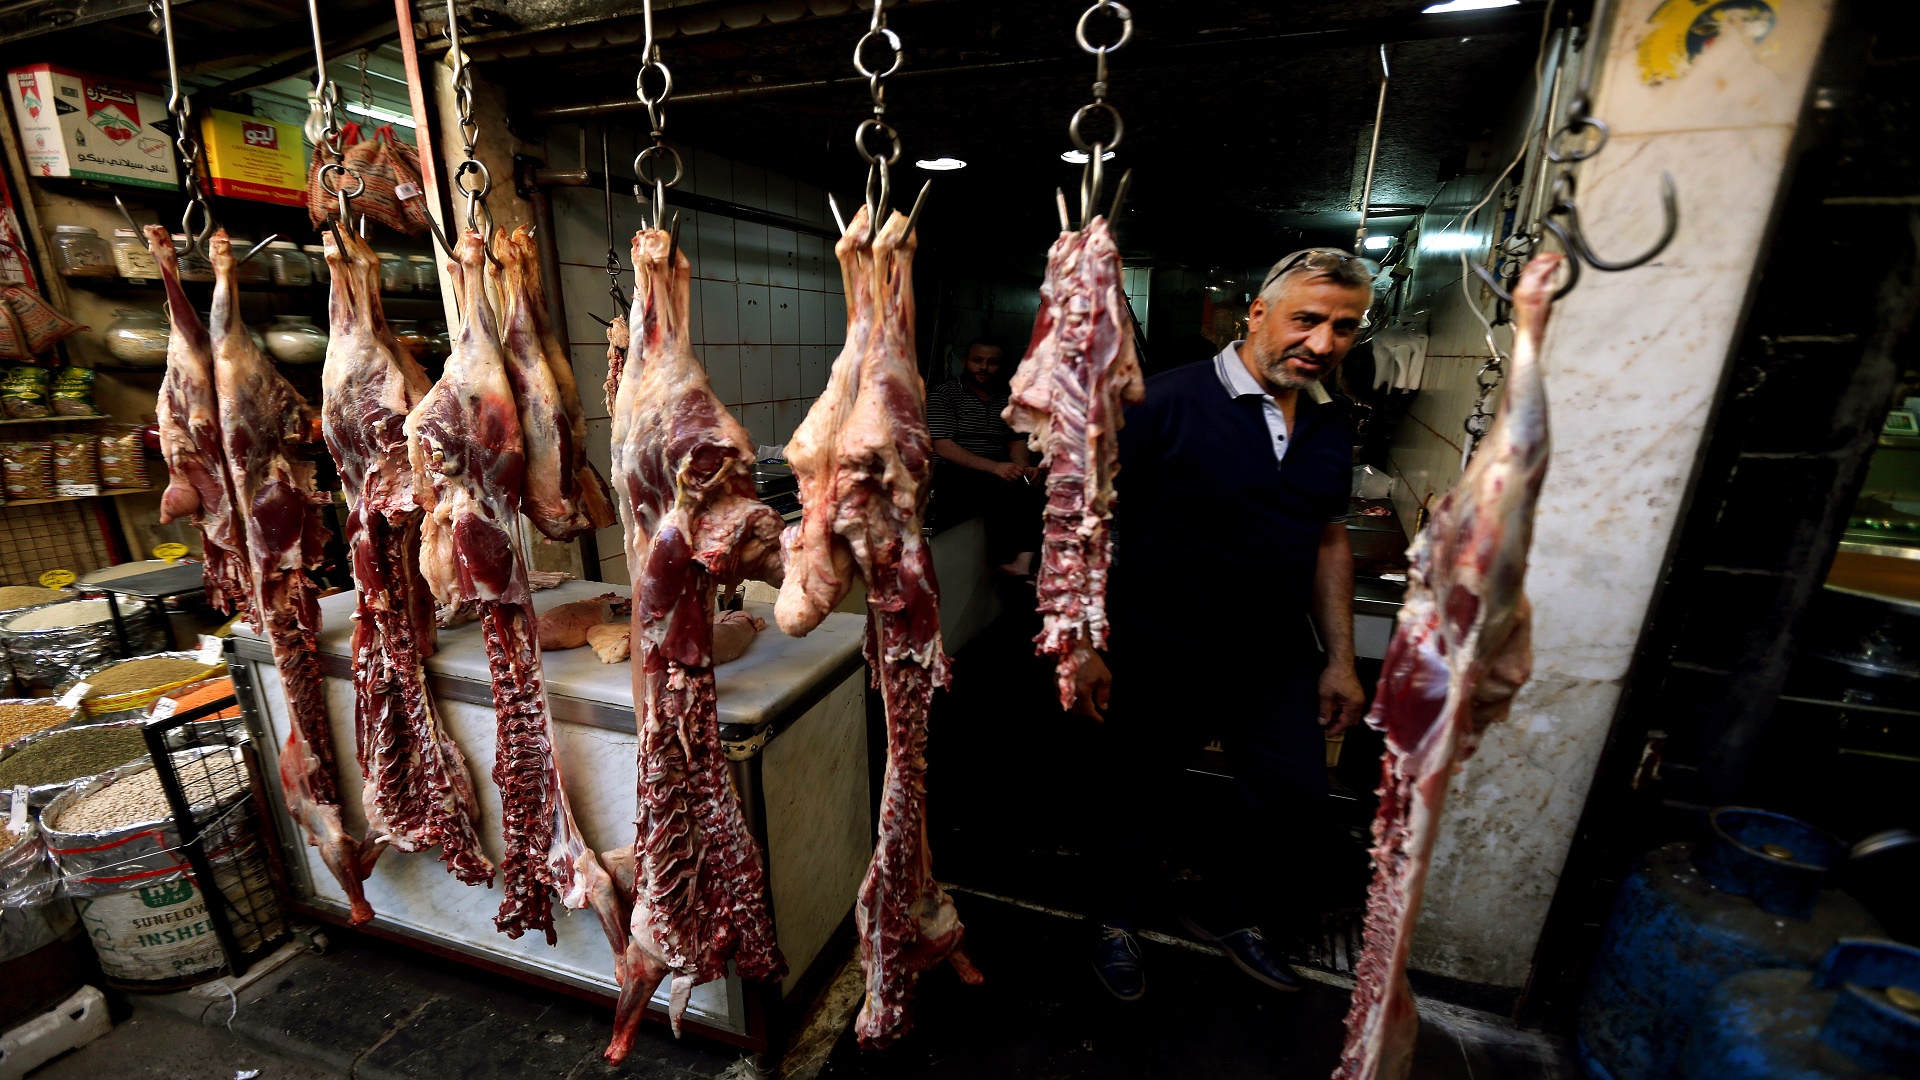 انتشار ظاهرة بيع اللحوم المجهولة في العاصمة دمشق #سوريا #دمشق #لحوم_فاسدة #ميديانا https://wp.me/pcLYFQ-z6